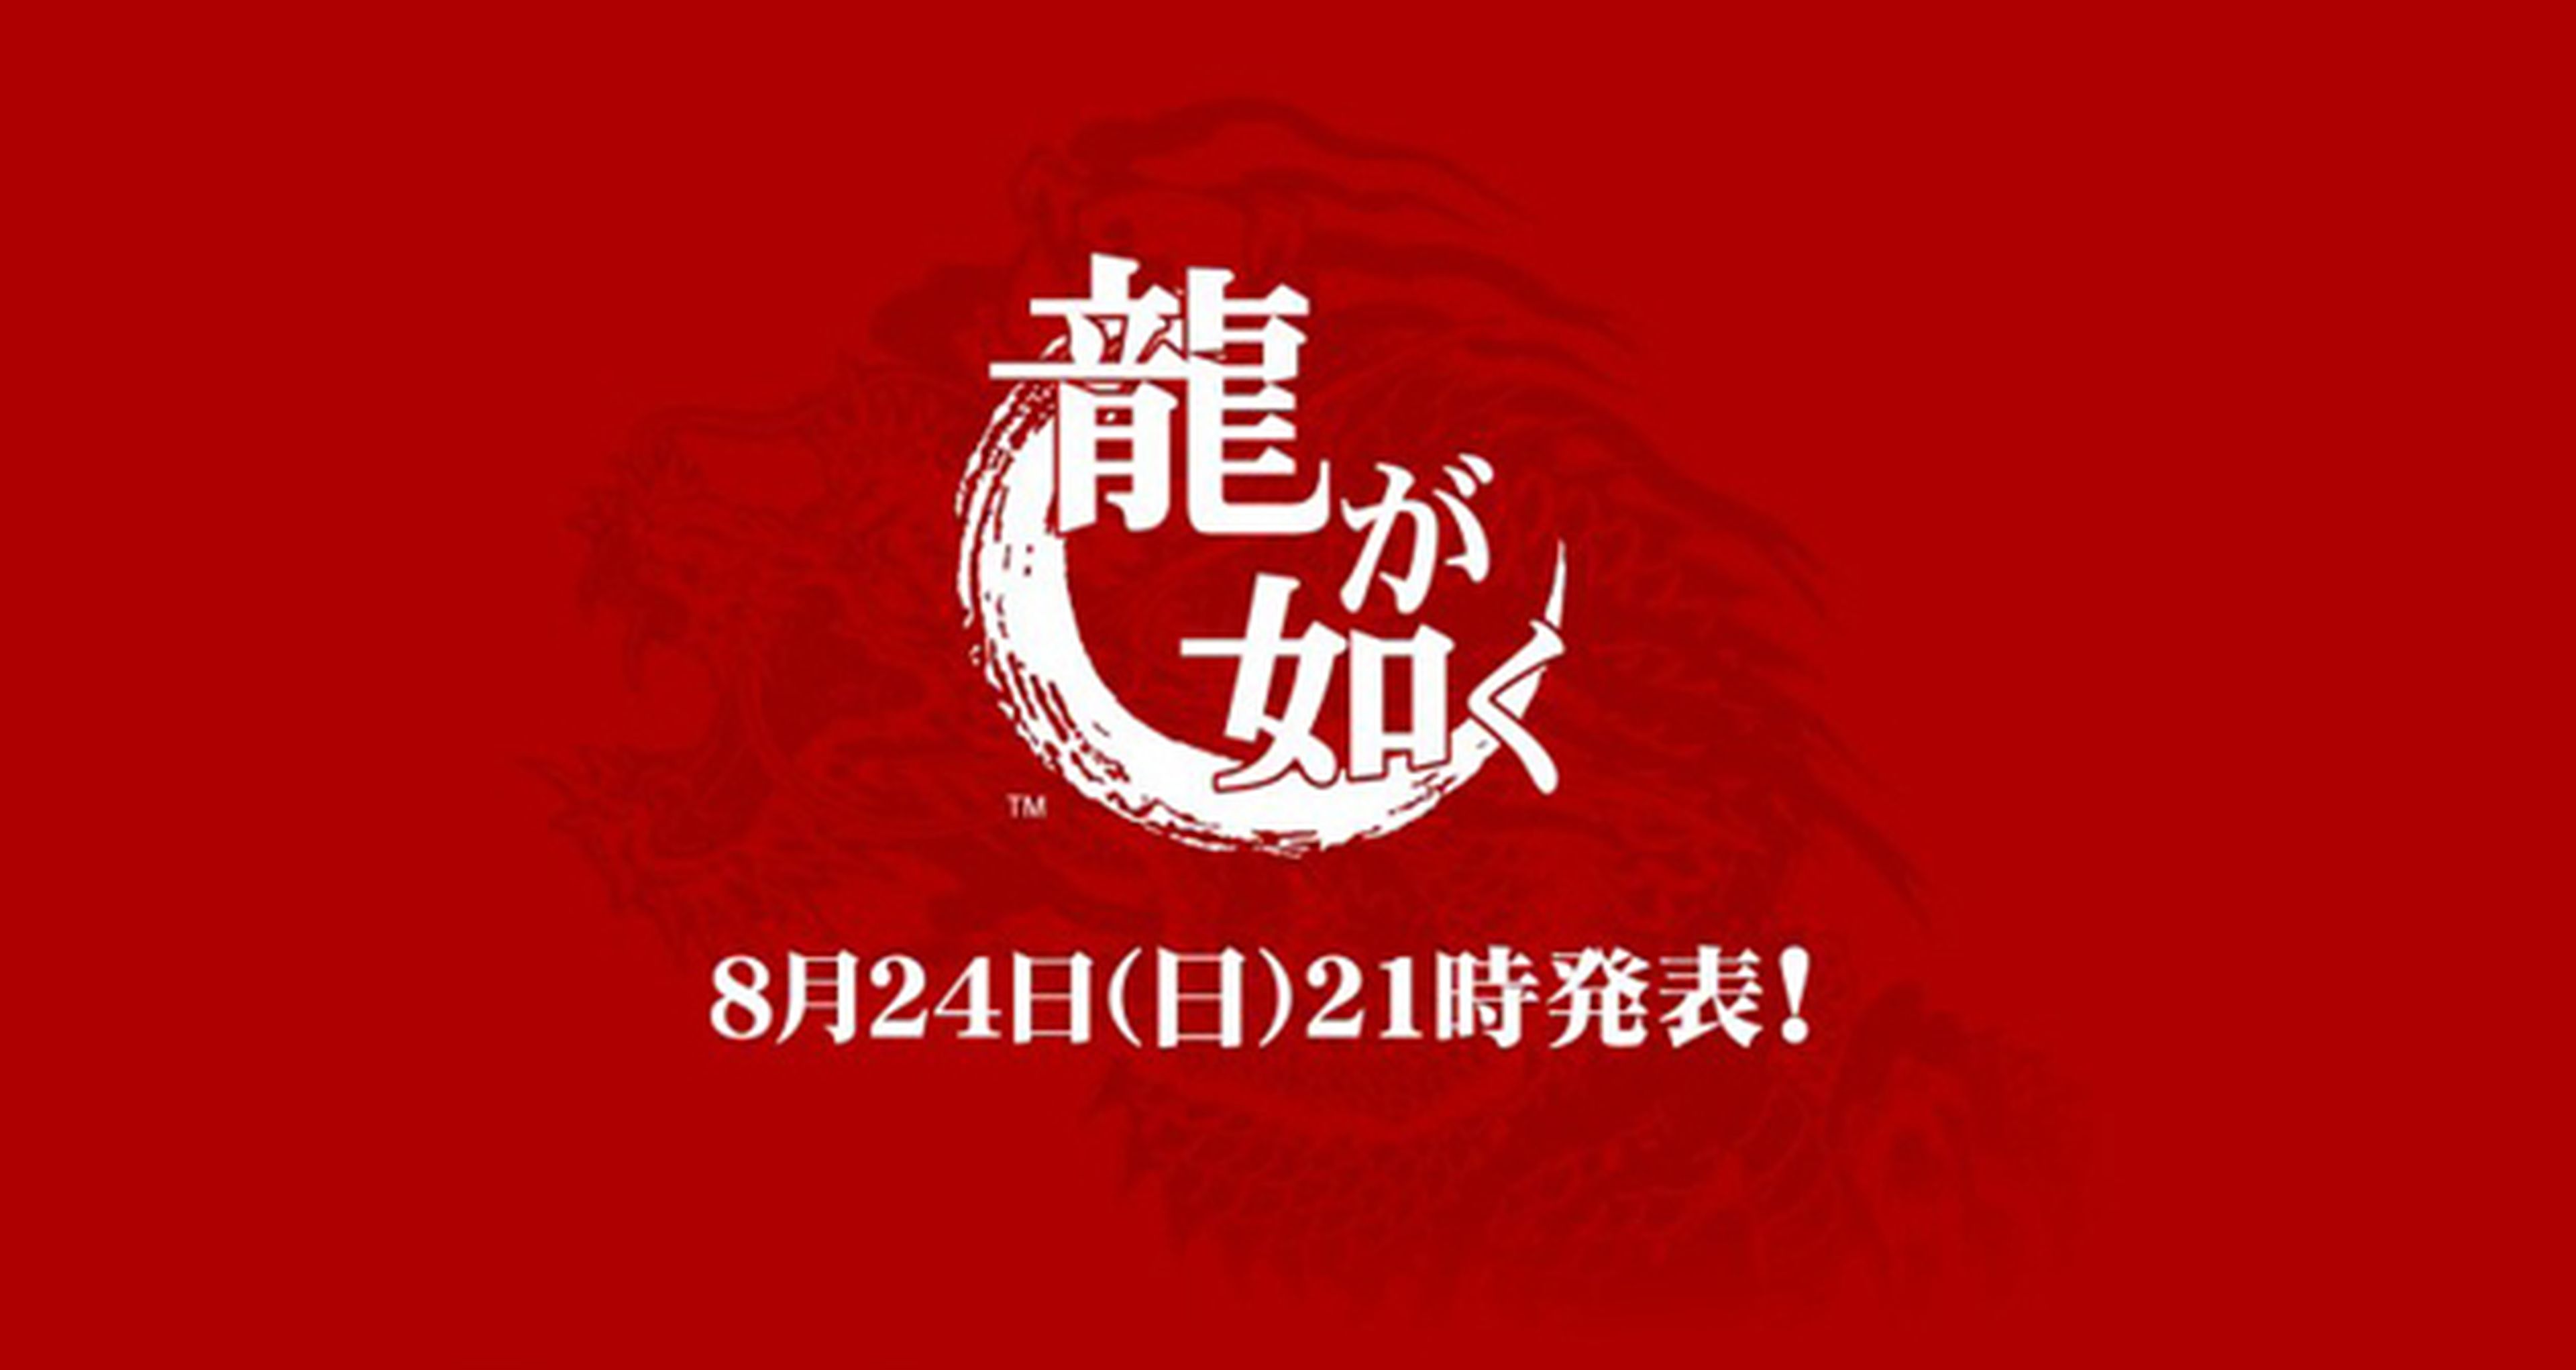 El 24 de agosto se anunciará el próximo Yakuza